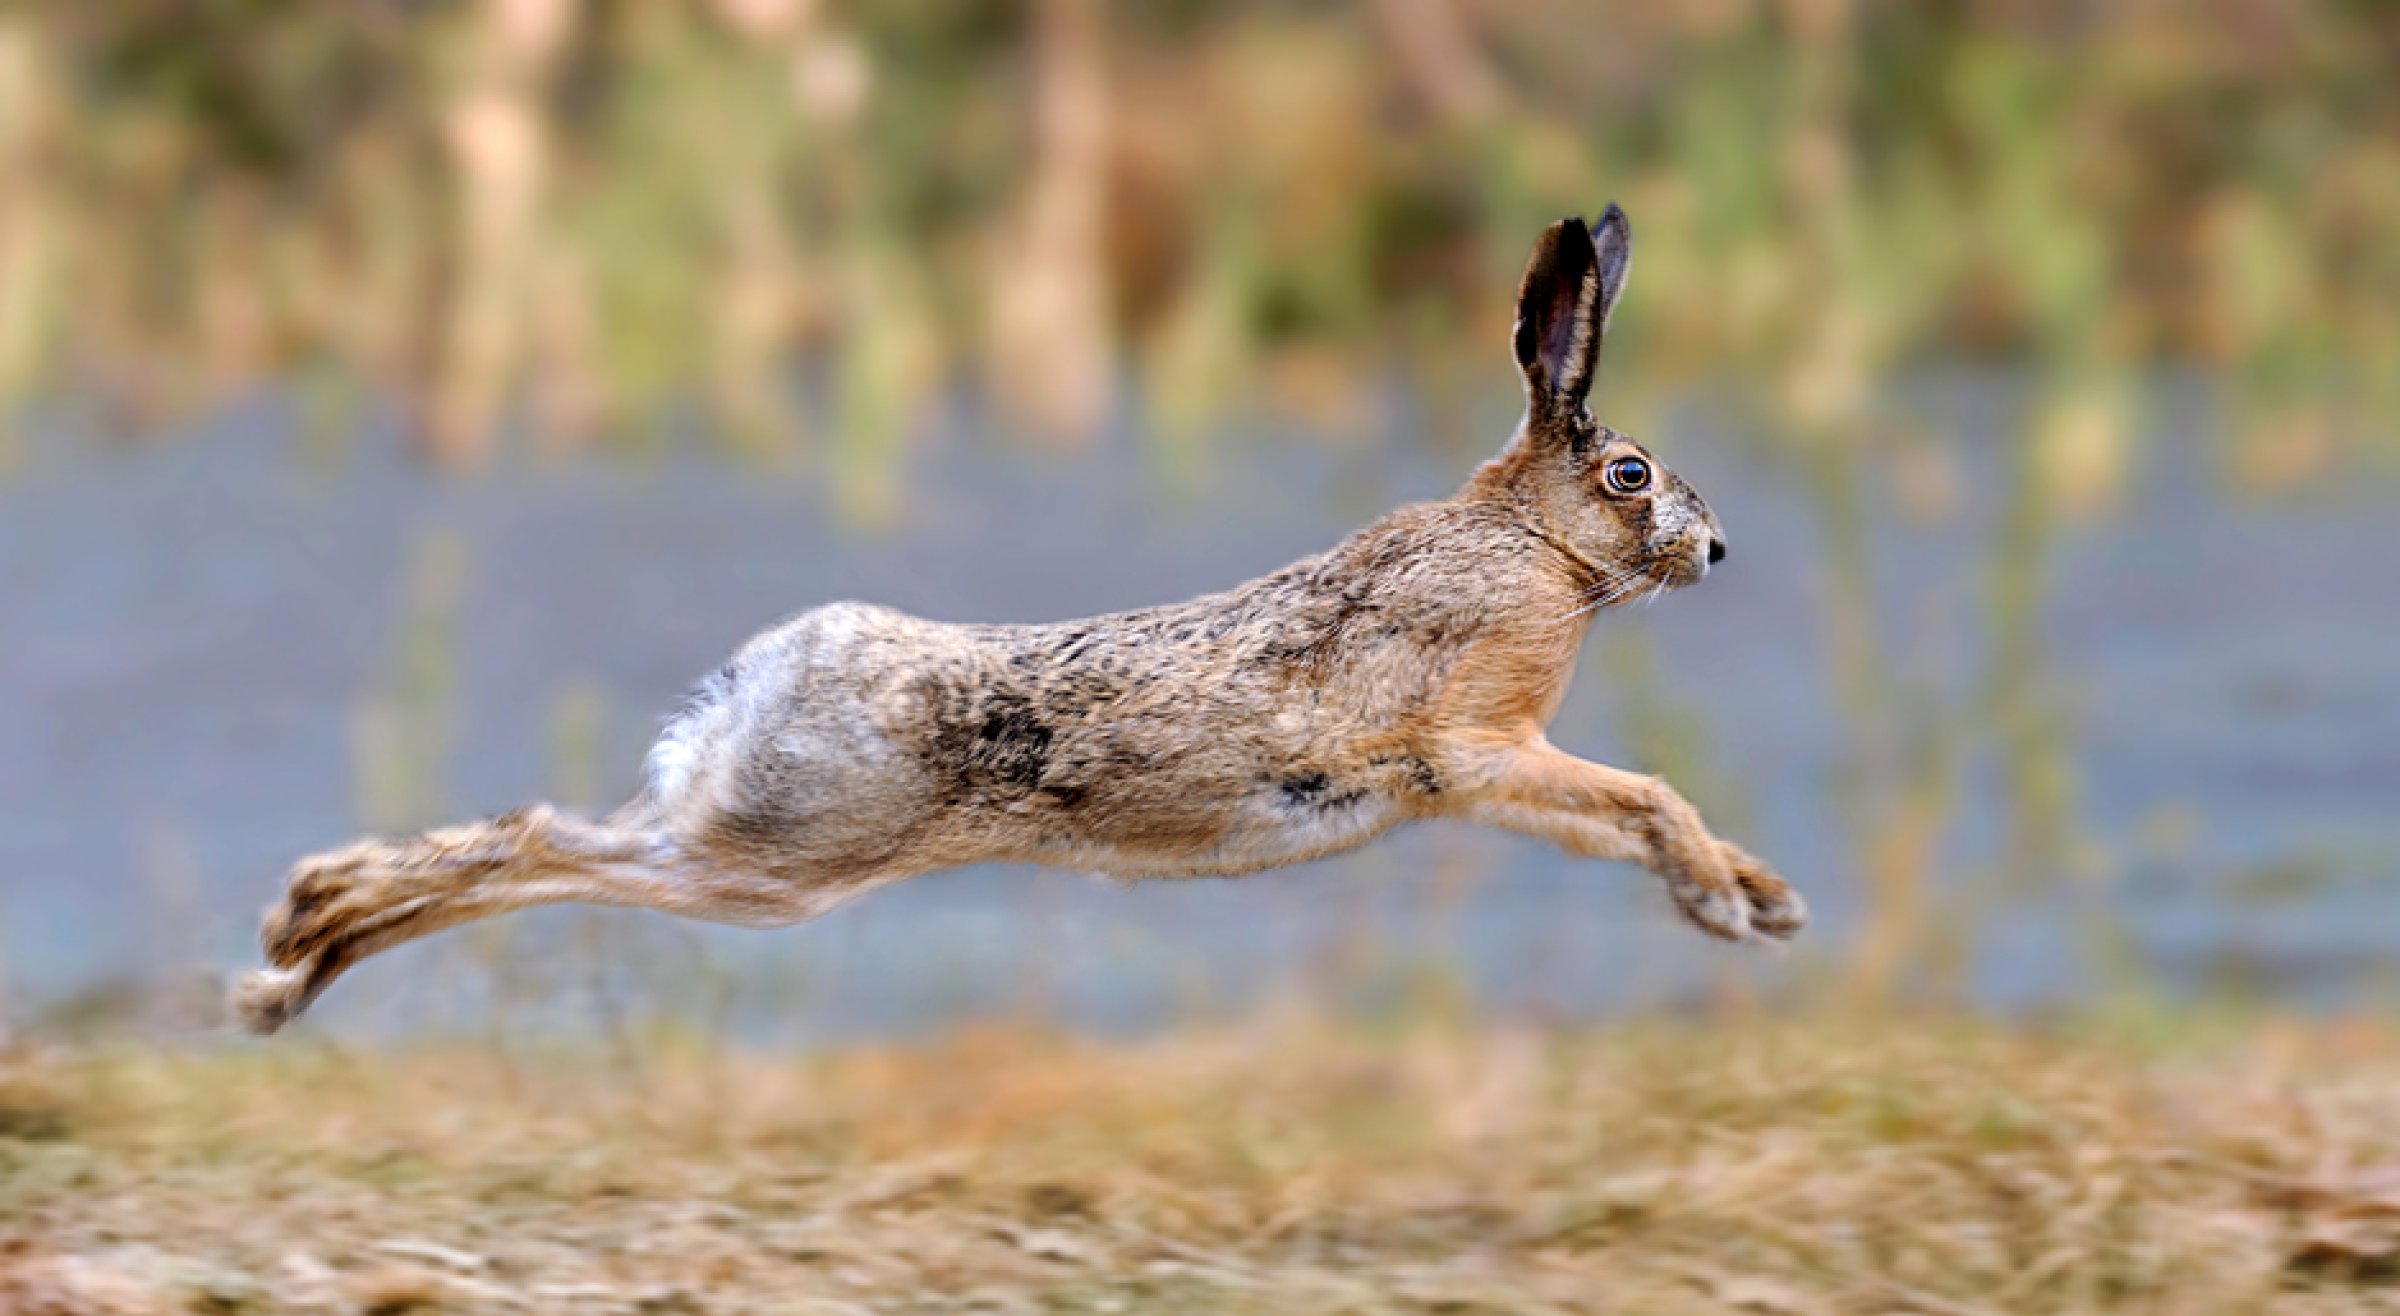 Hare og smågnagere kan bli svært syke av harepest (tularemi) og dør vanligvis etter noe dager. Typisk for syke harer, er at de beveger seg tregere enn normalt, men rett etter at de er smittet kan de virke friske. Foto: Colourbox